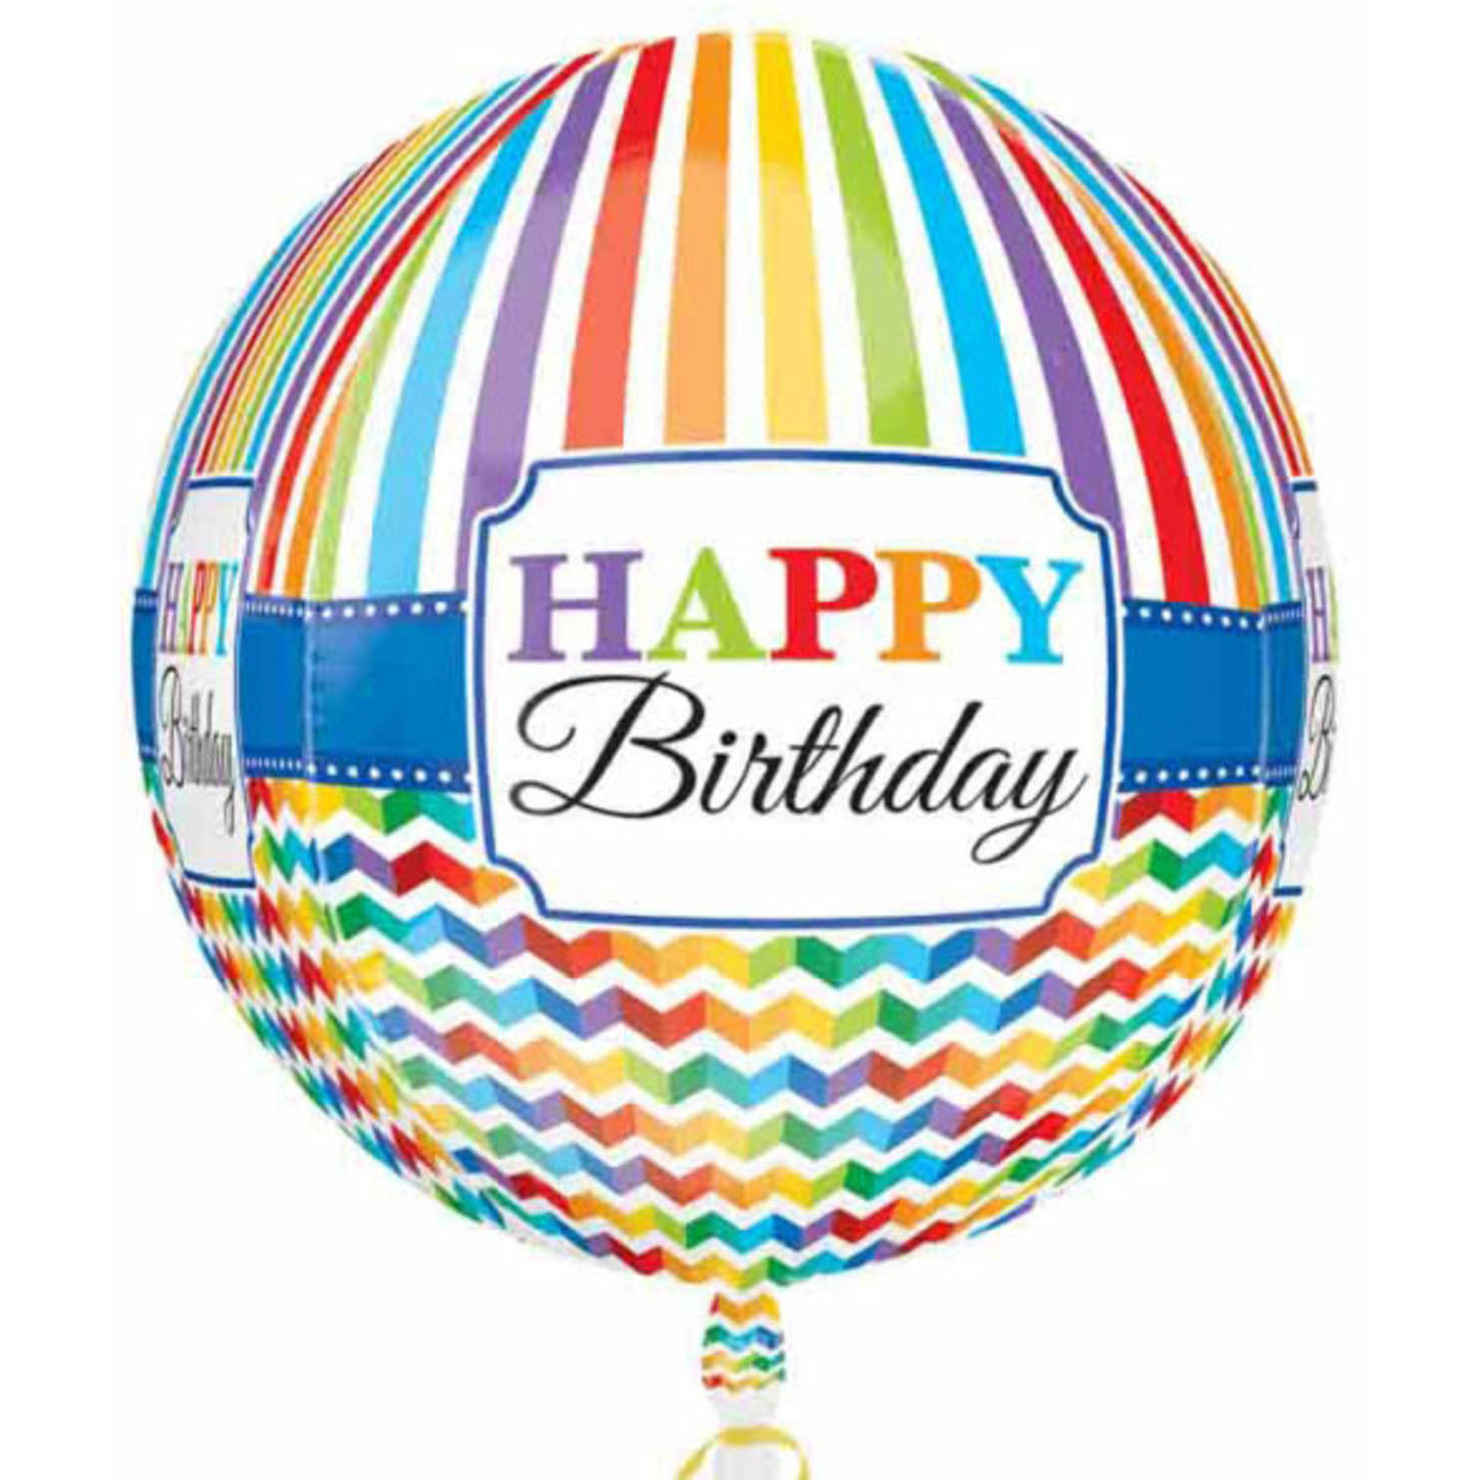 Folie ballon orbz/rond Gefeliciteerd/Happy Birthday 40 cm met helium gevuld -